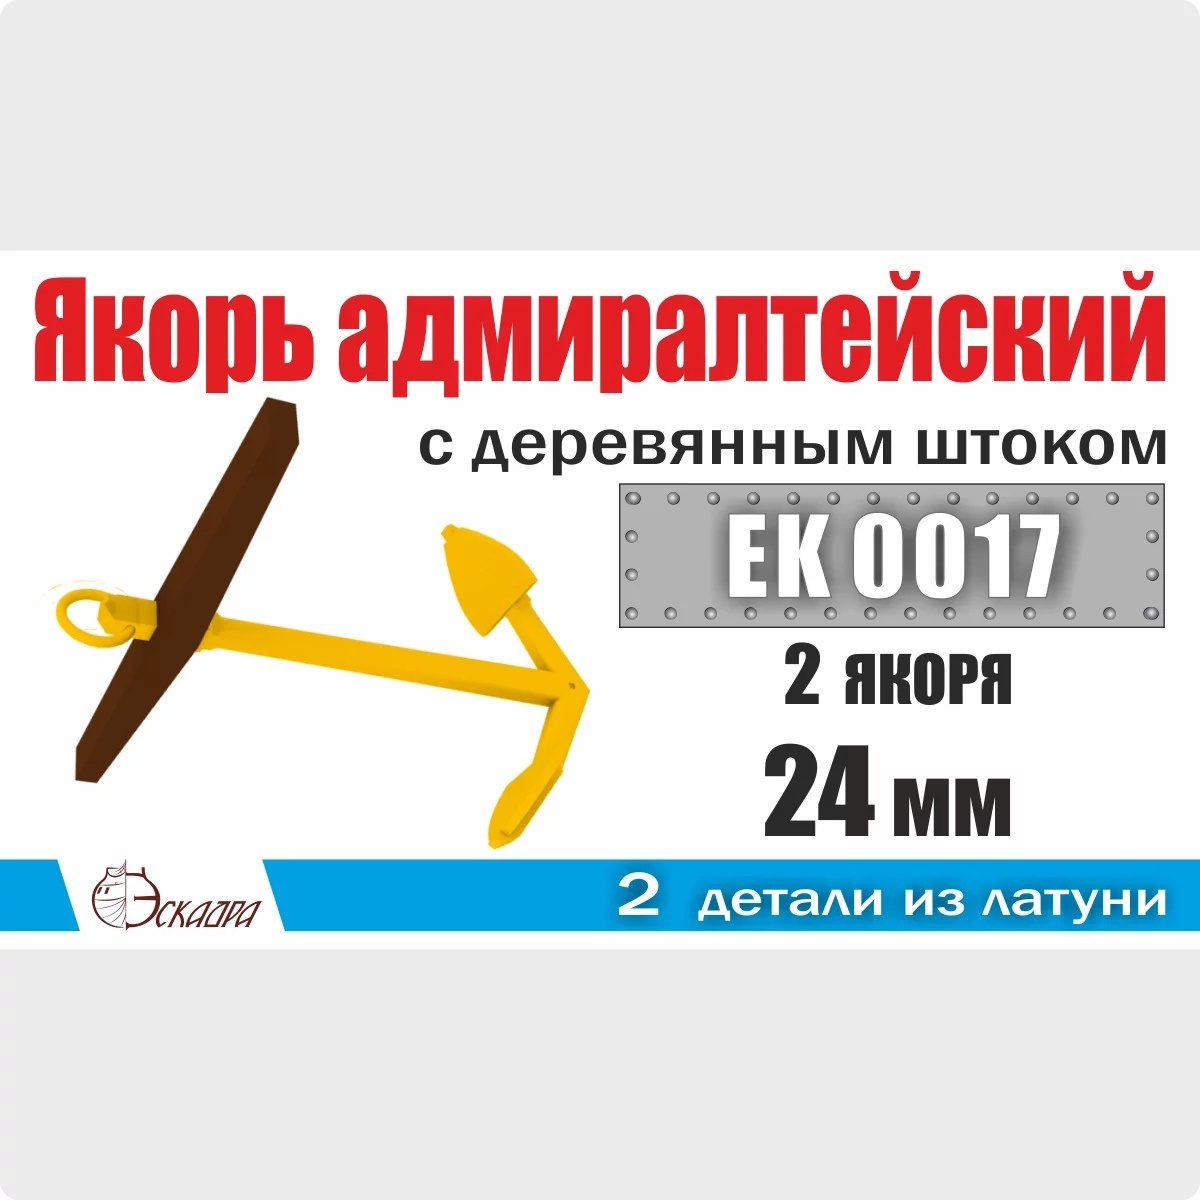 EK0017  дополнения из металла  Якорь адмиралтейский 24 мм с деревянным штоком (2 шт/уп)  (1:72)